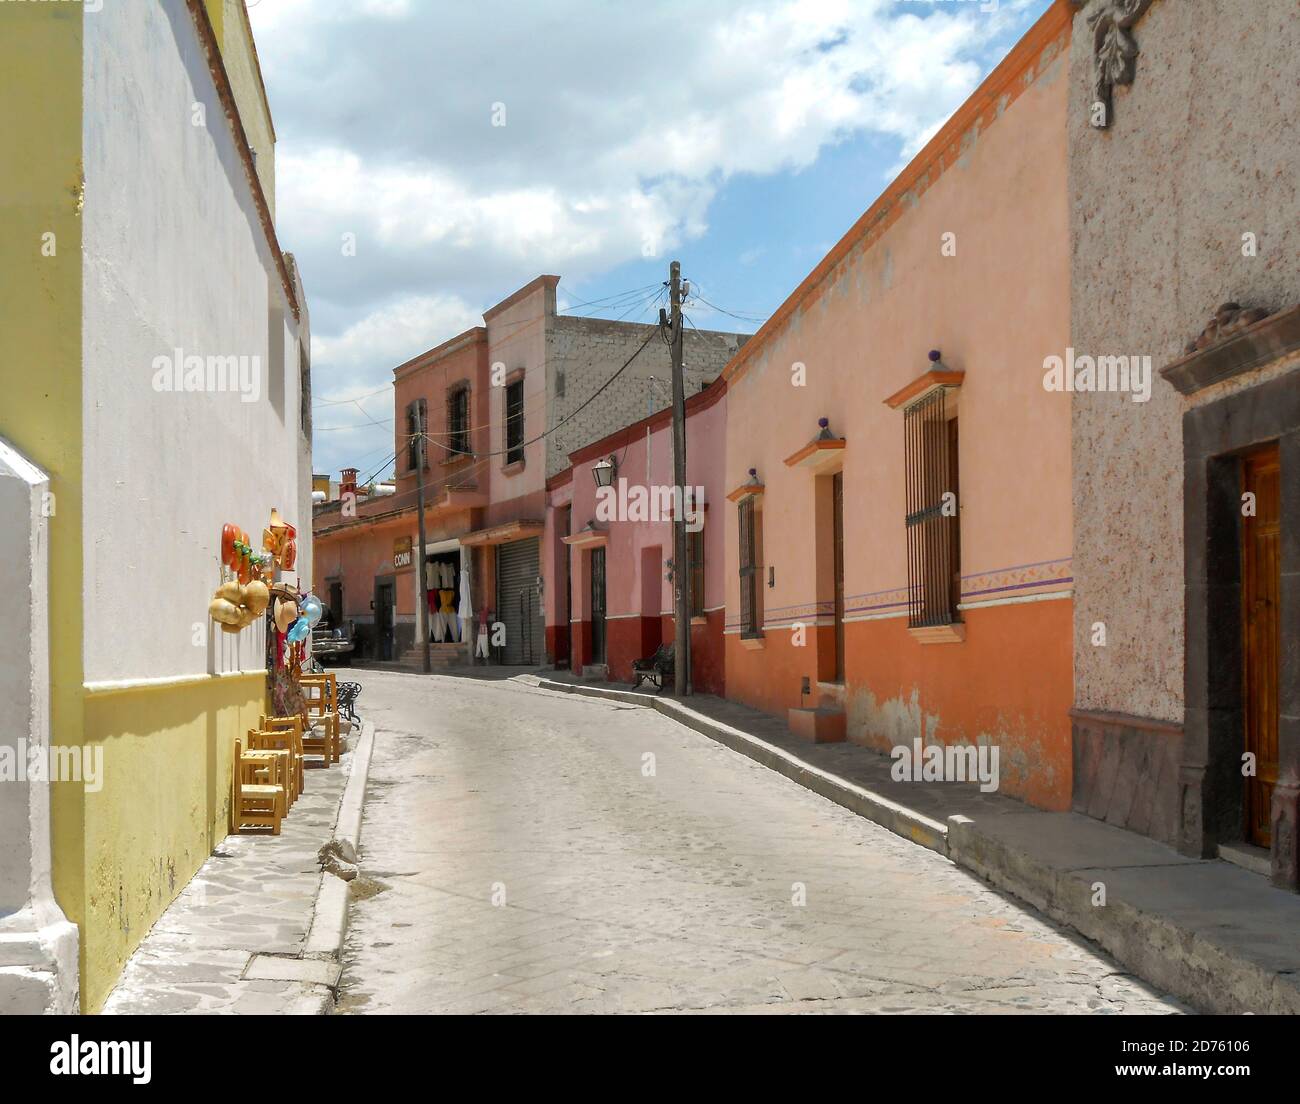 Bernal street scene, Queretaro, Mexico Stock Photo